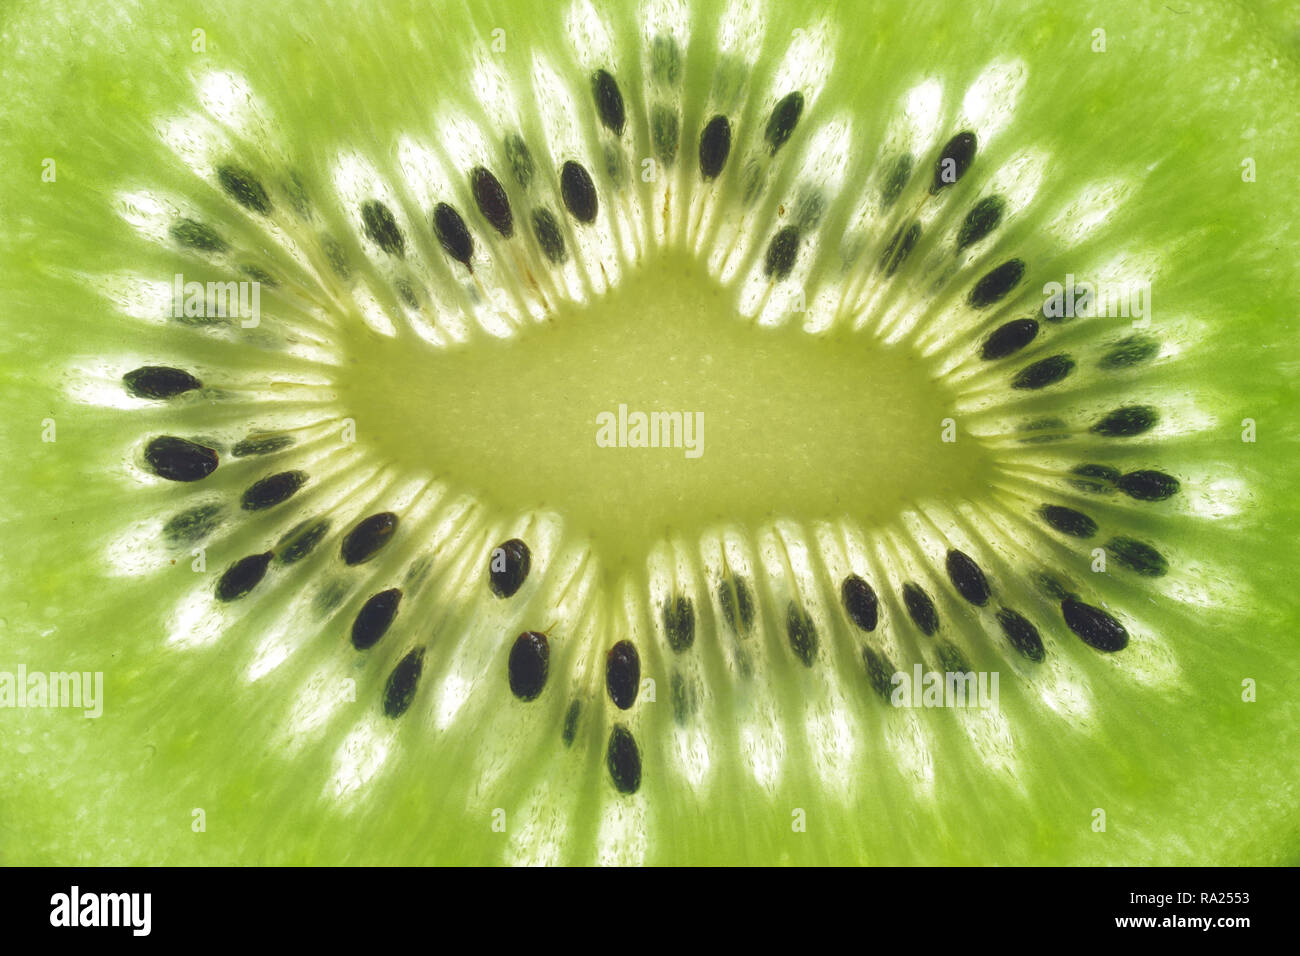 background with cut kiwi fruit macro Stock Photo